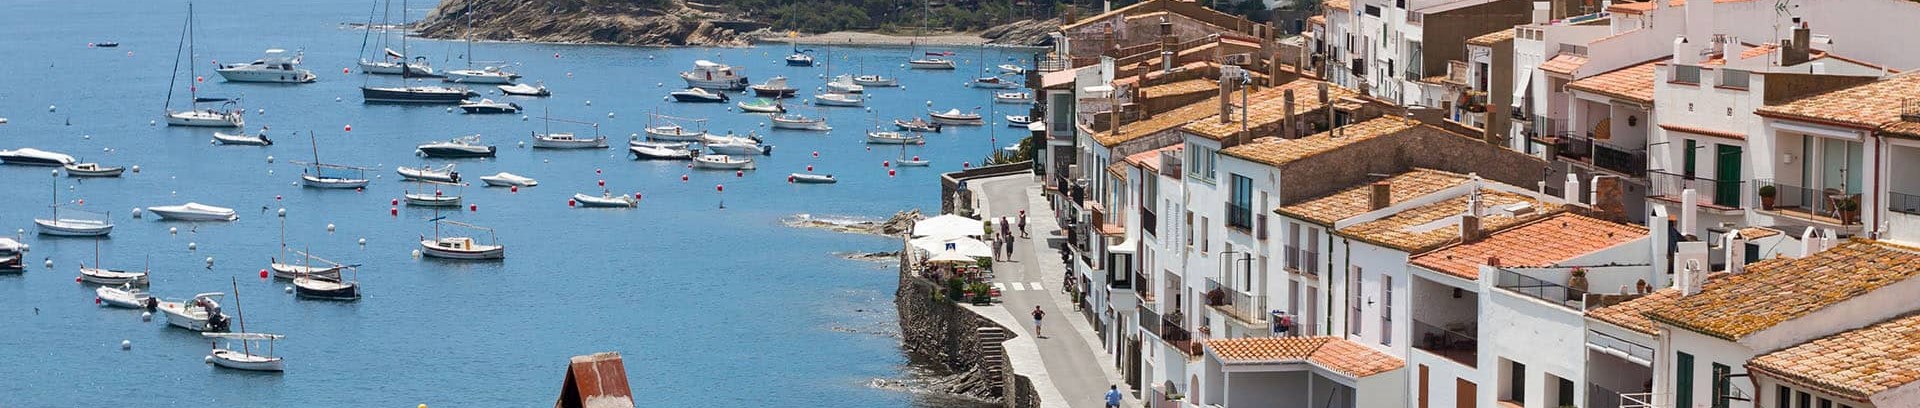 Billede af hvid by ved middelhavet i Spanien